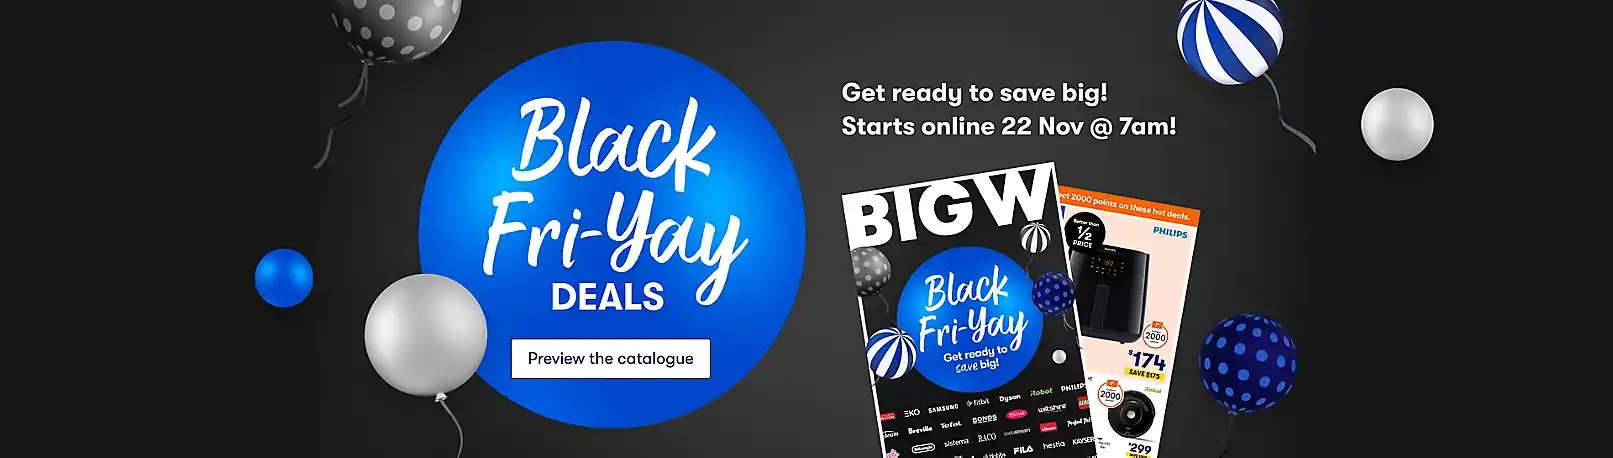 Big W Day 7 Black Friday Daily deal + Big W Black Fri Yay Sales